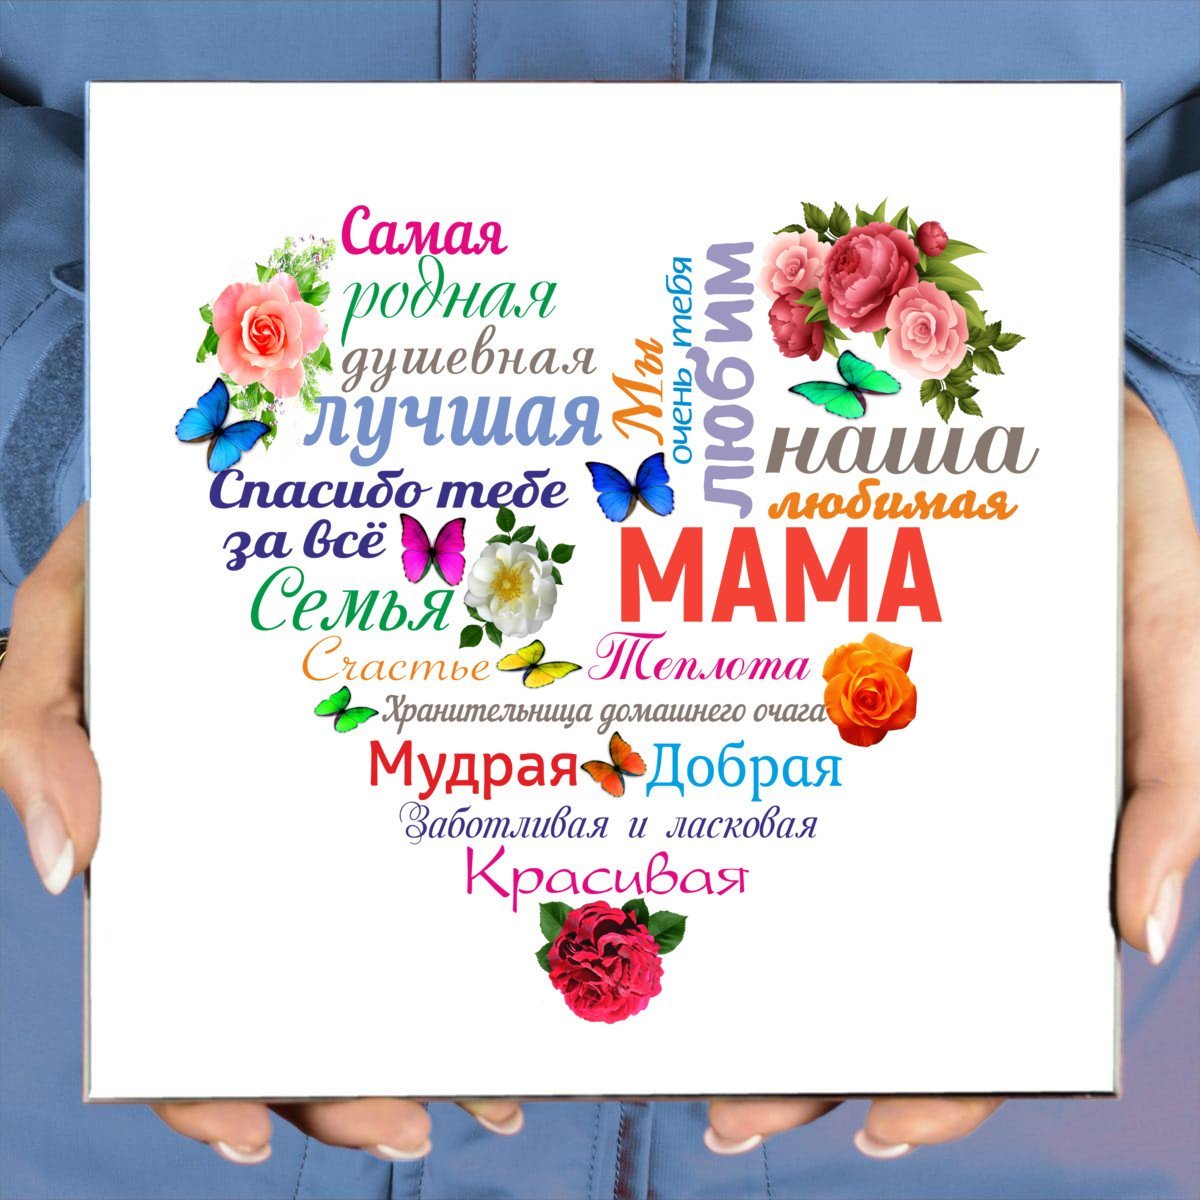 День главного Человека в жизни - празднование дня Мамы в Грузии